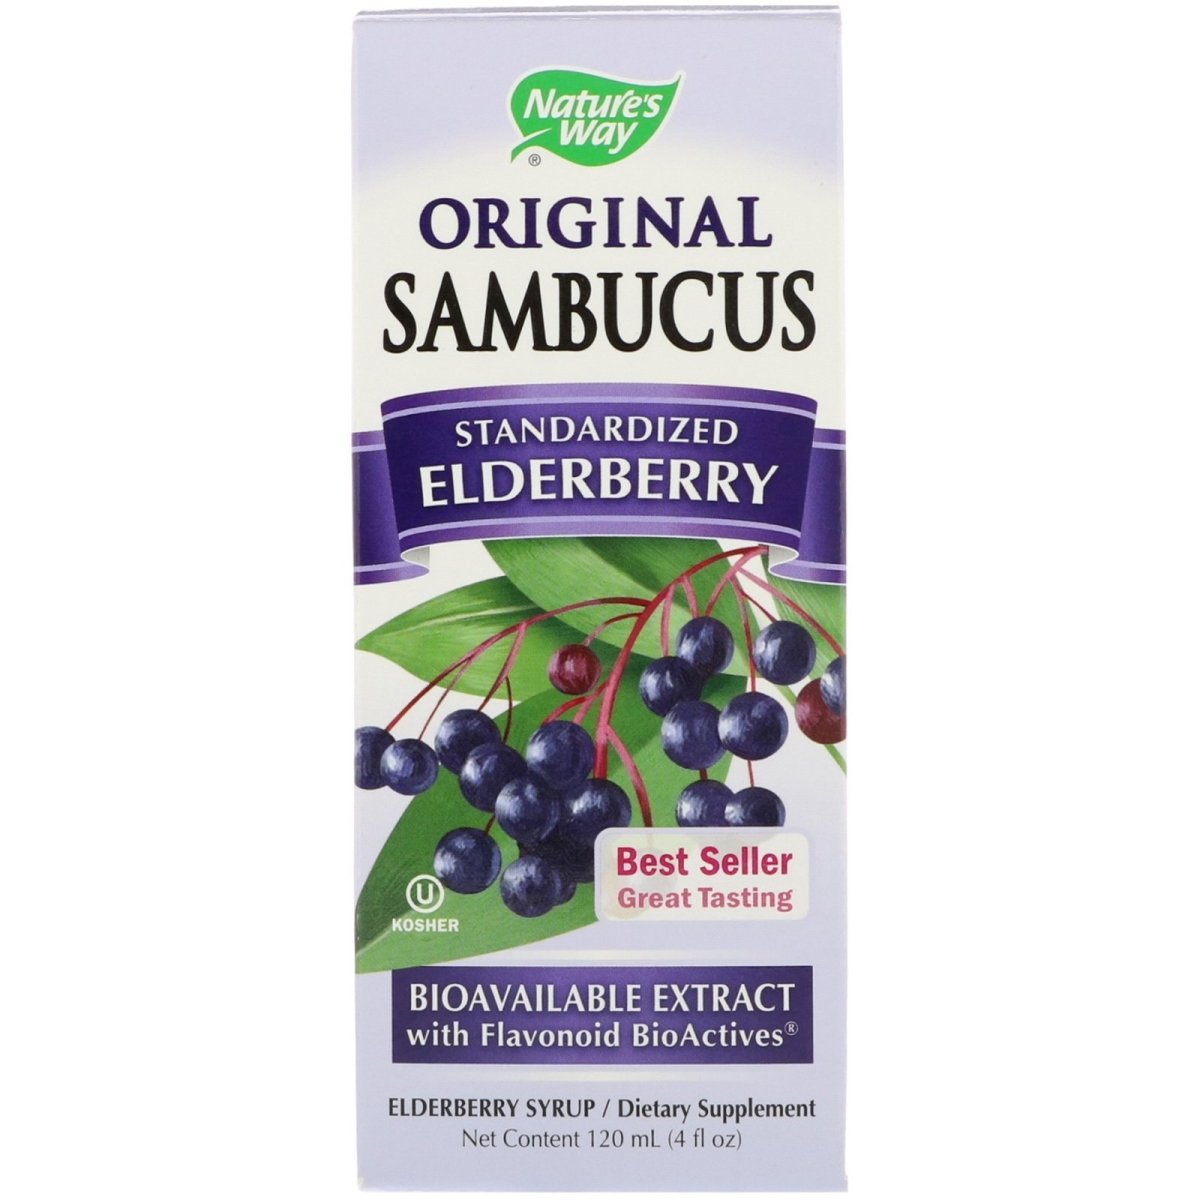 Sambucus Standardized Elderberry - Original Syrup - 4oz